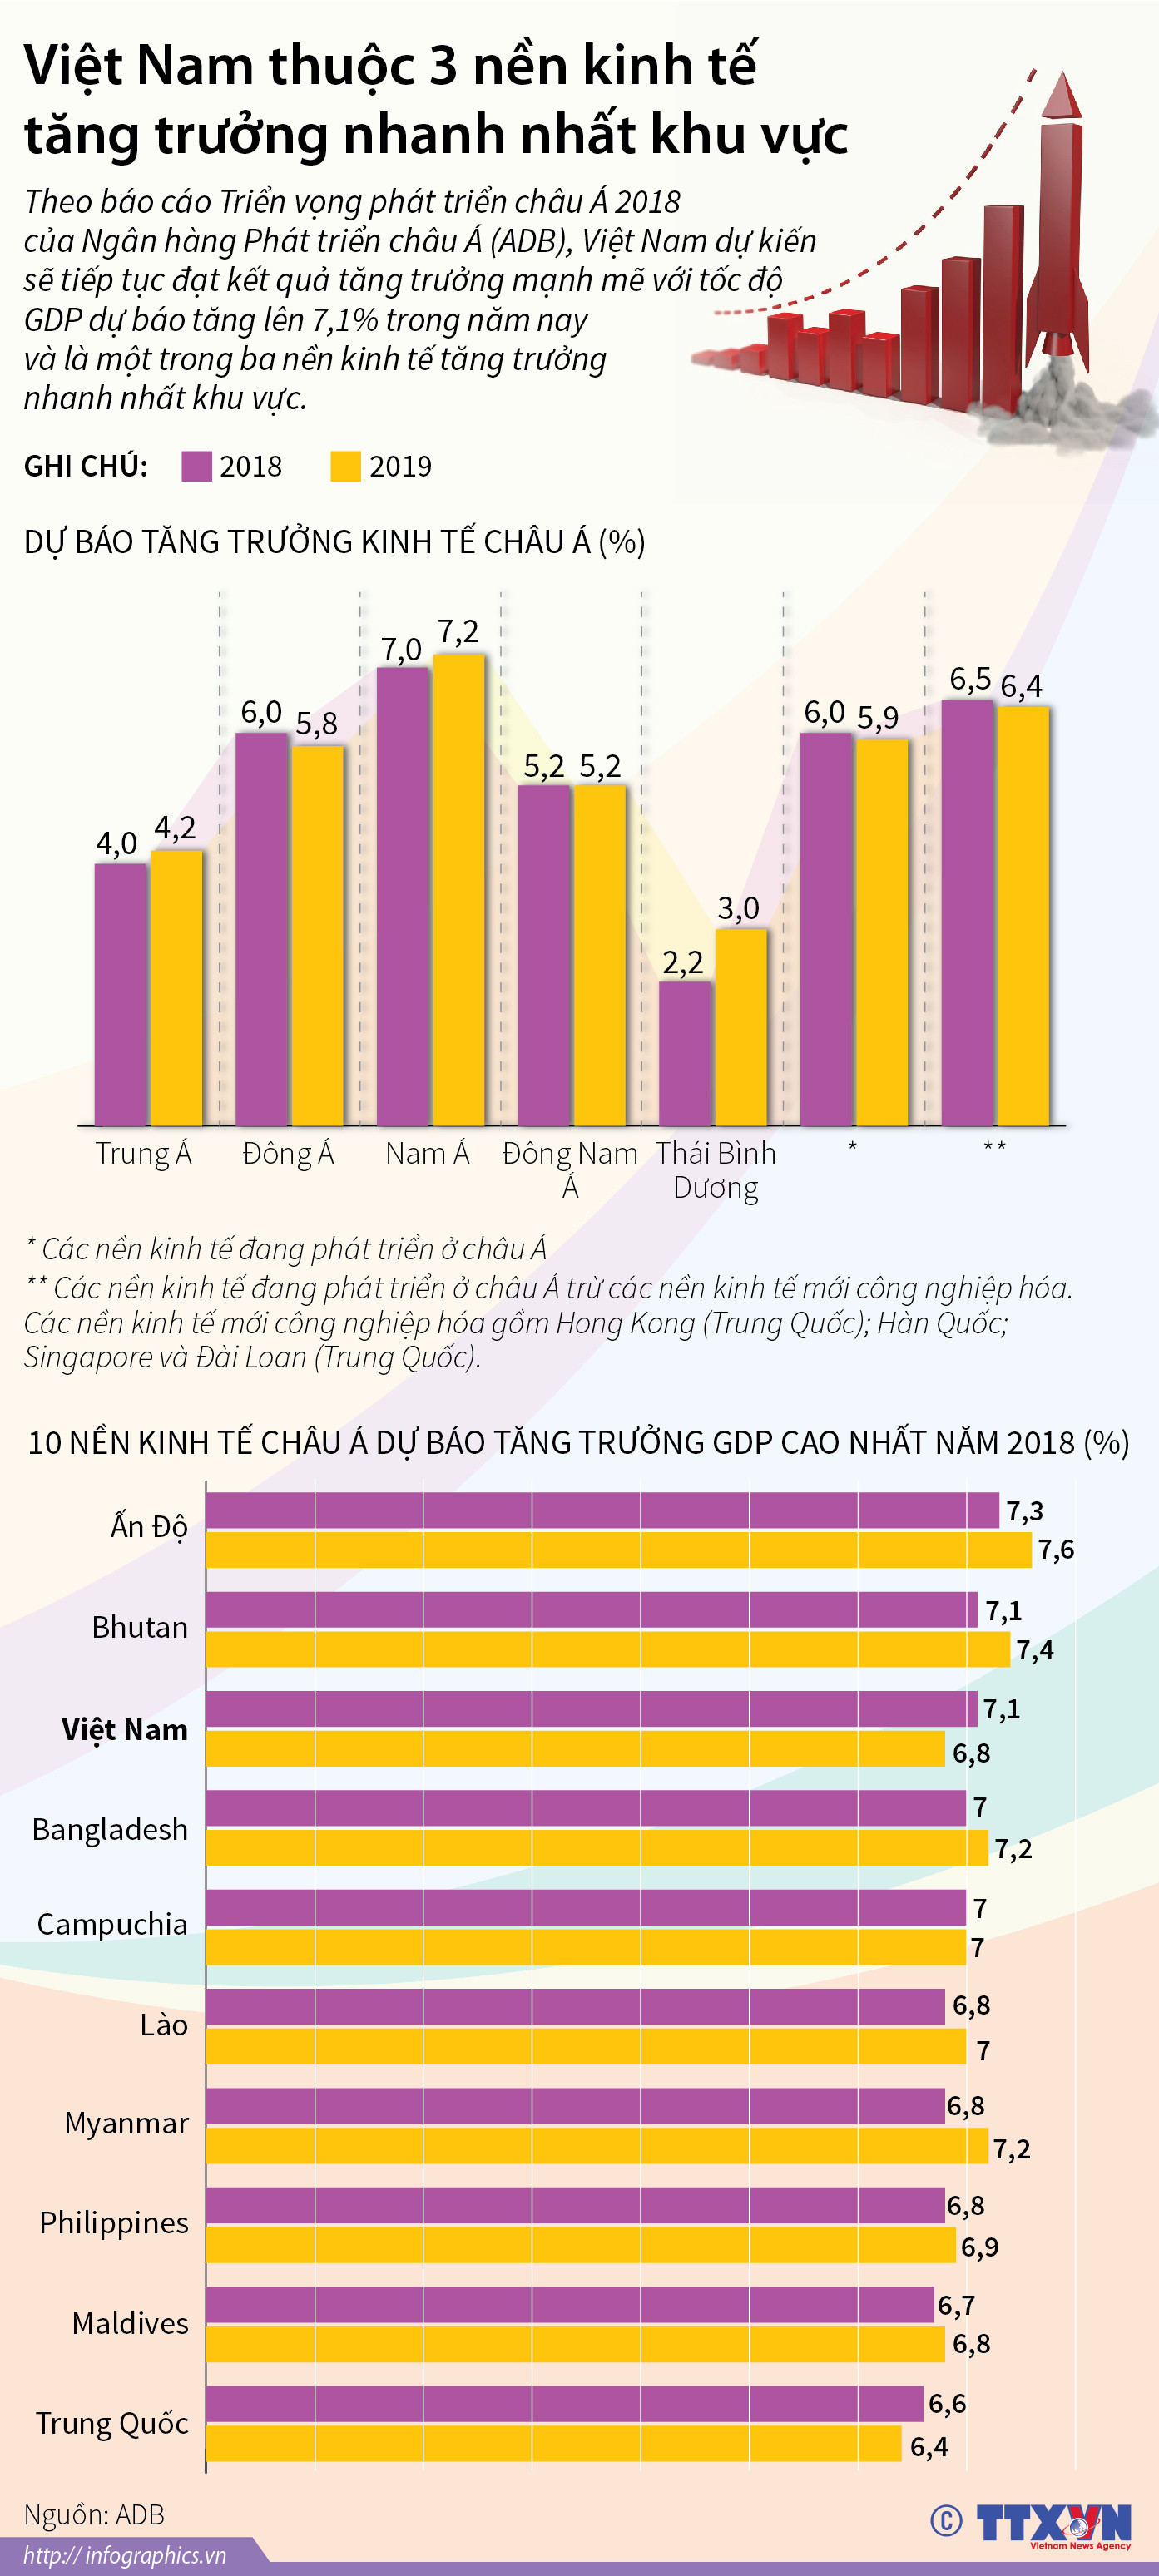 Việt Nam thuộc 3 nền kinh tế tăng trưởng nhanh nhất khu vực